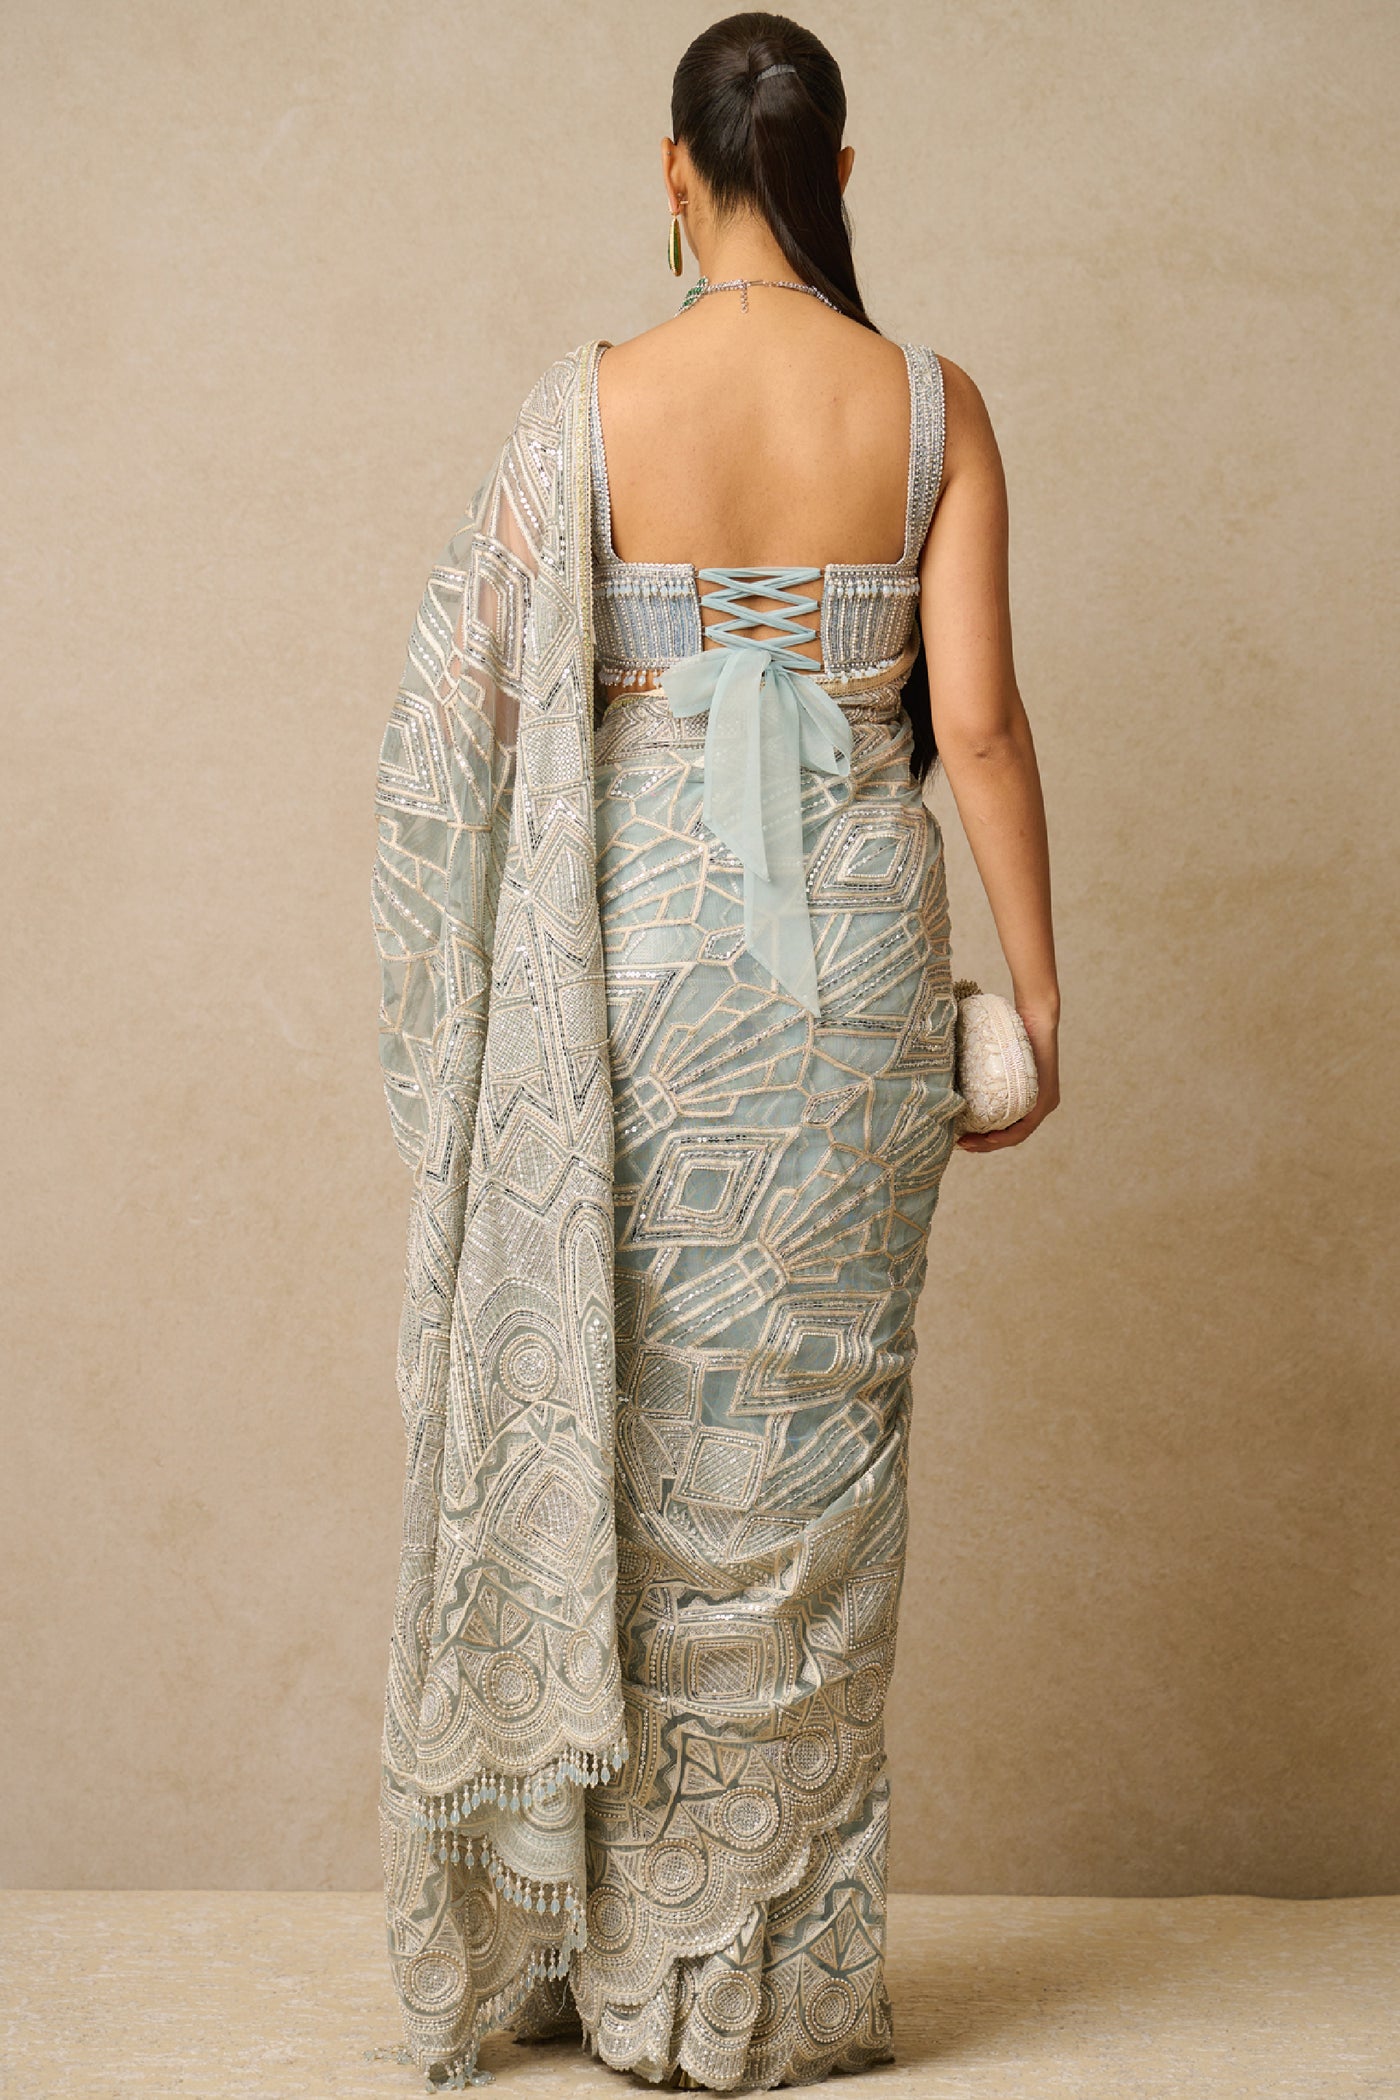 Tarun Tahiliani Saree Blouse indian designer wear online shopping melange singapore